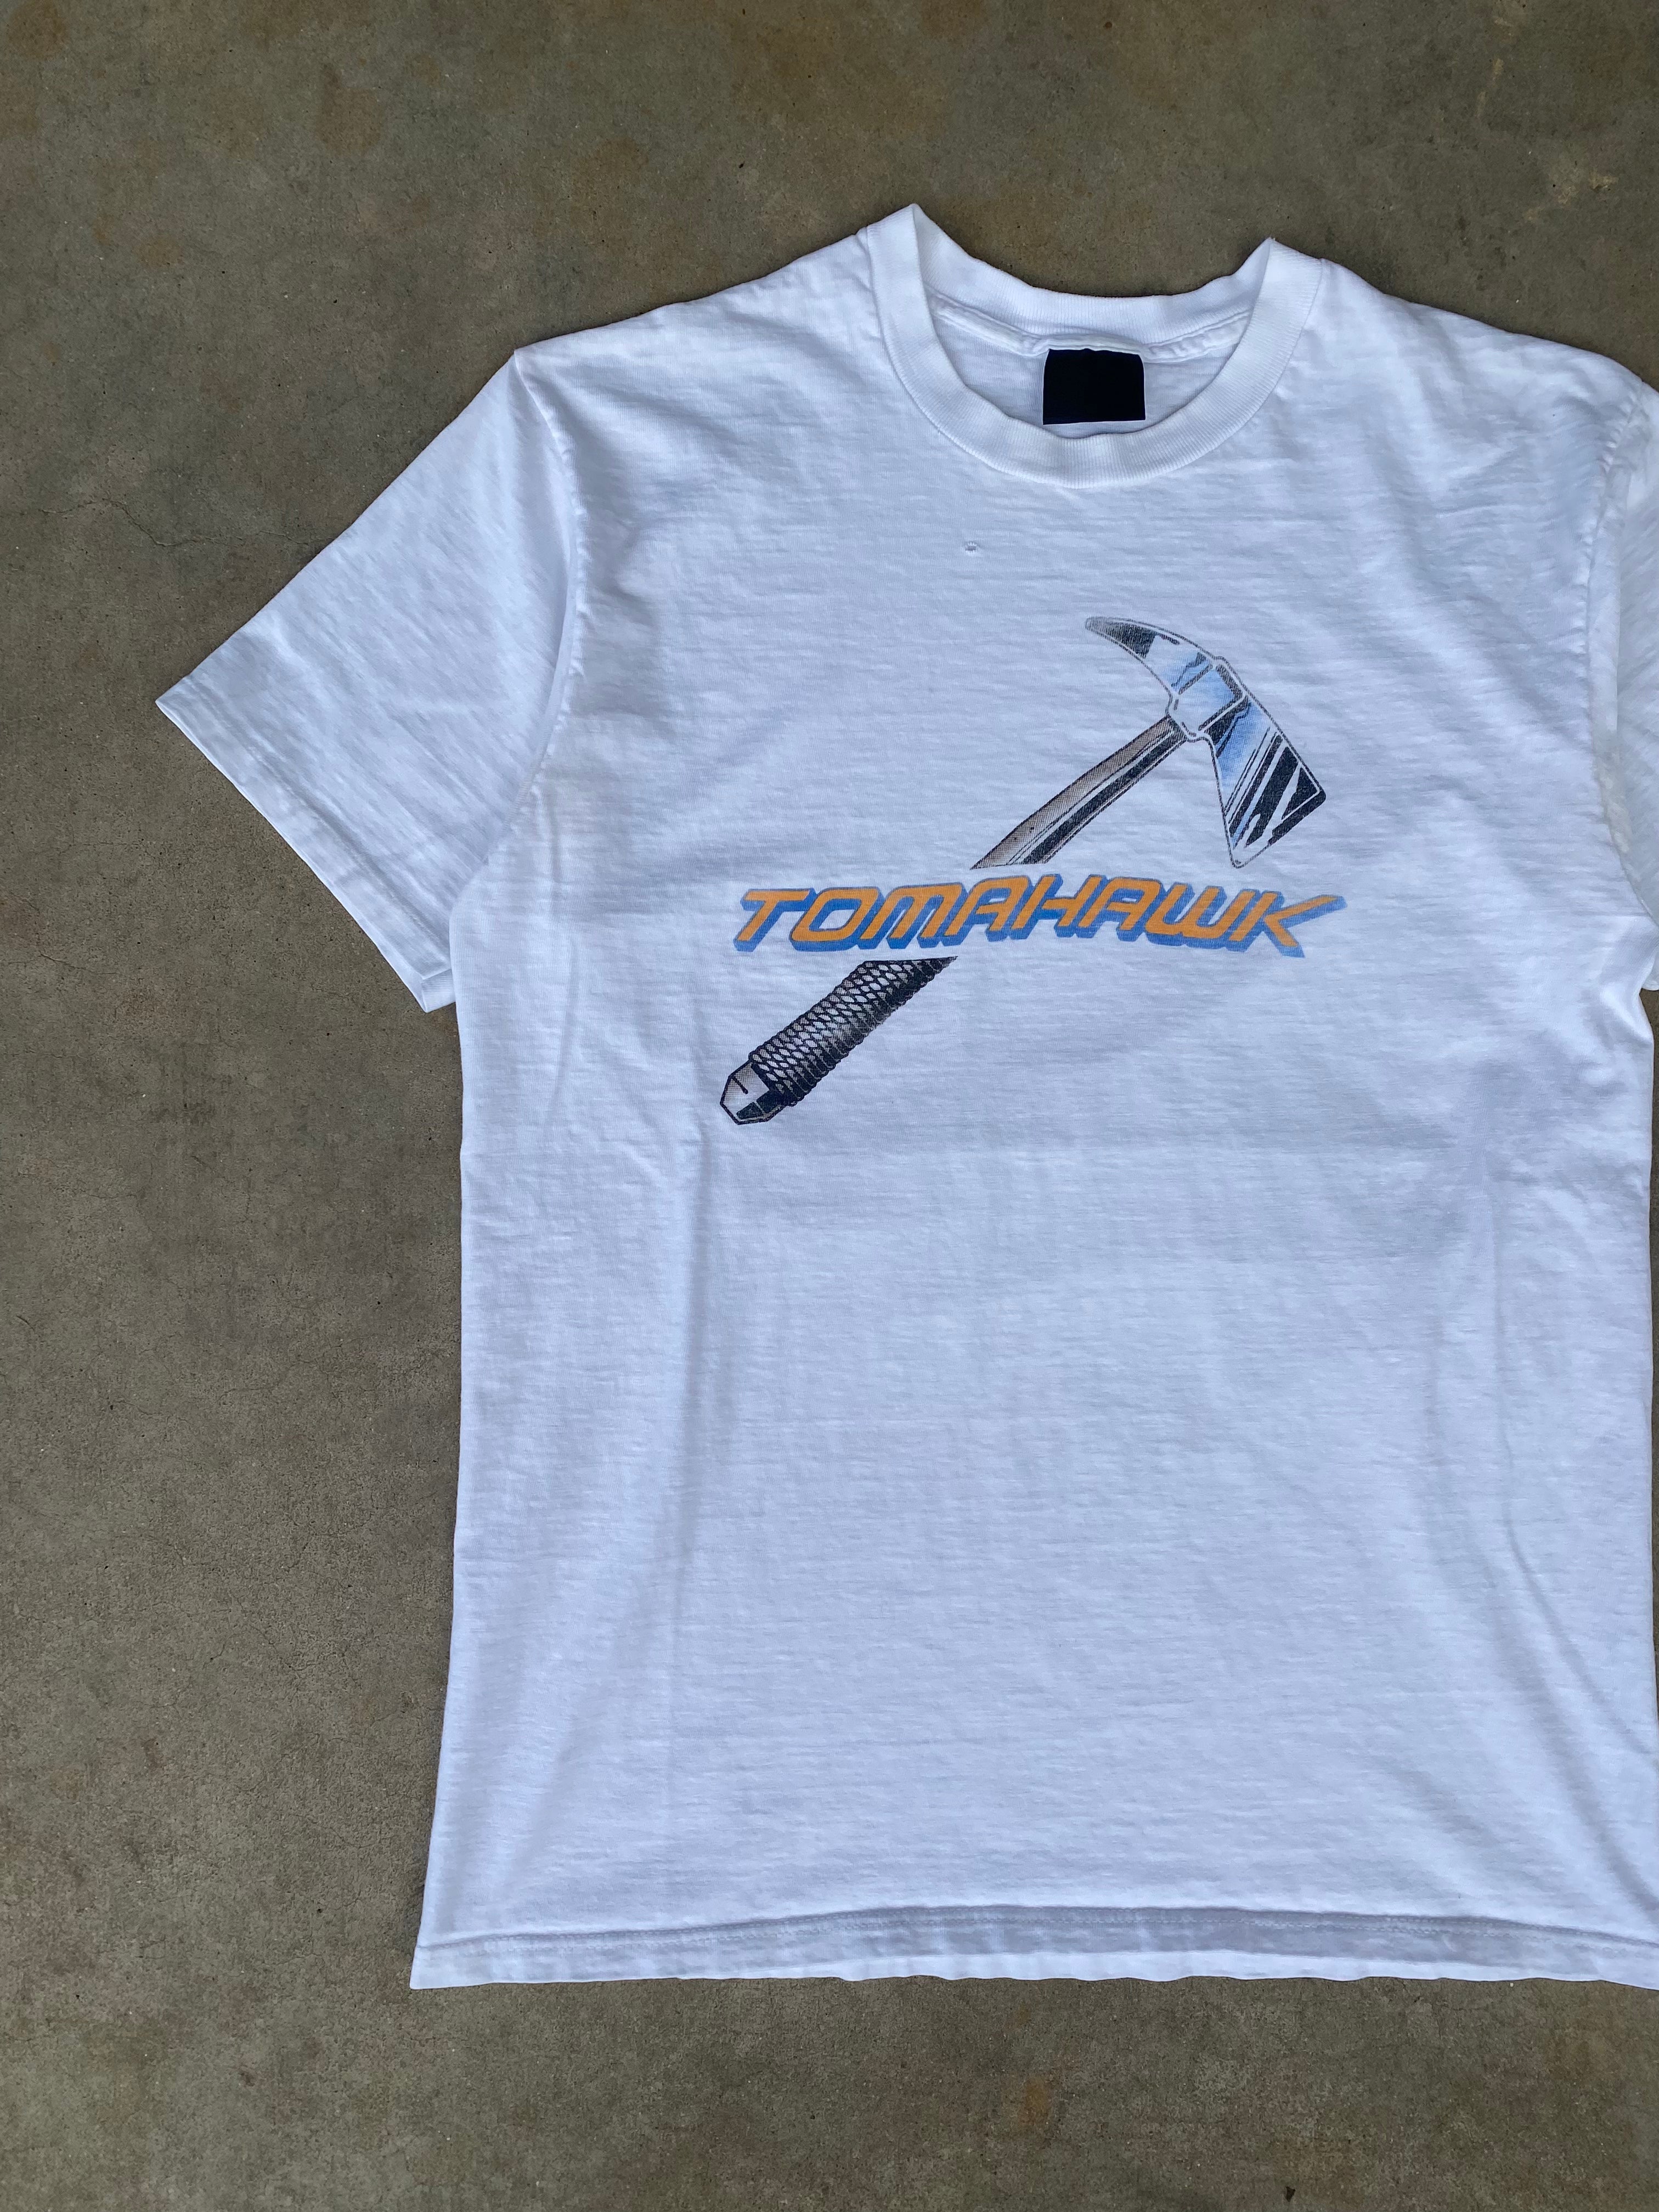 1980s Tomahawk T-Shirt (M)